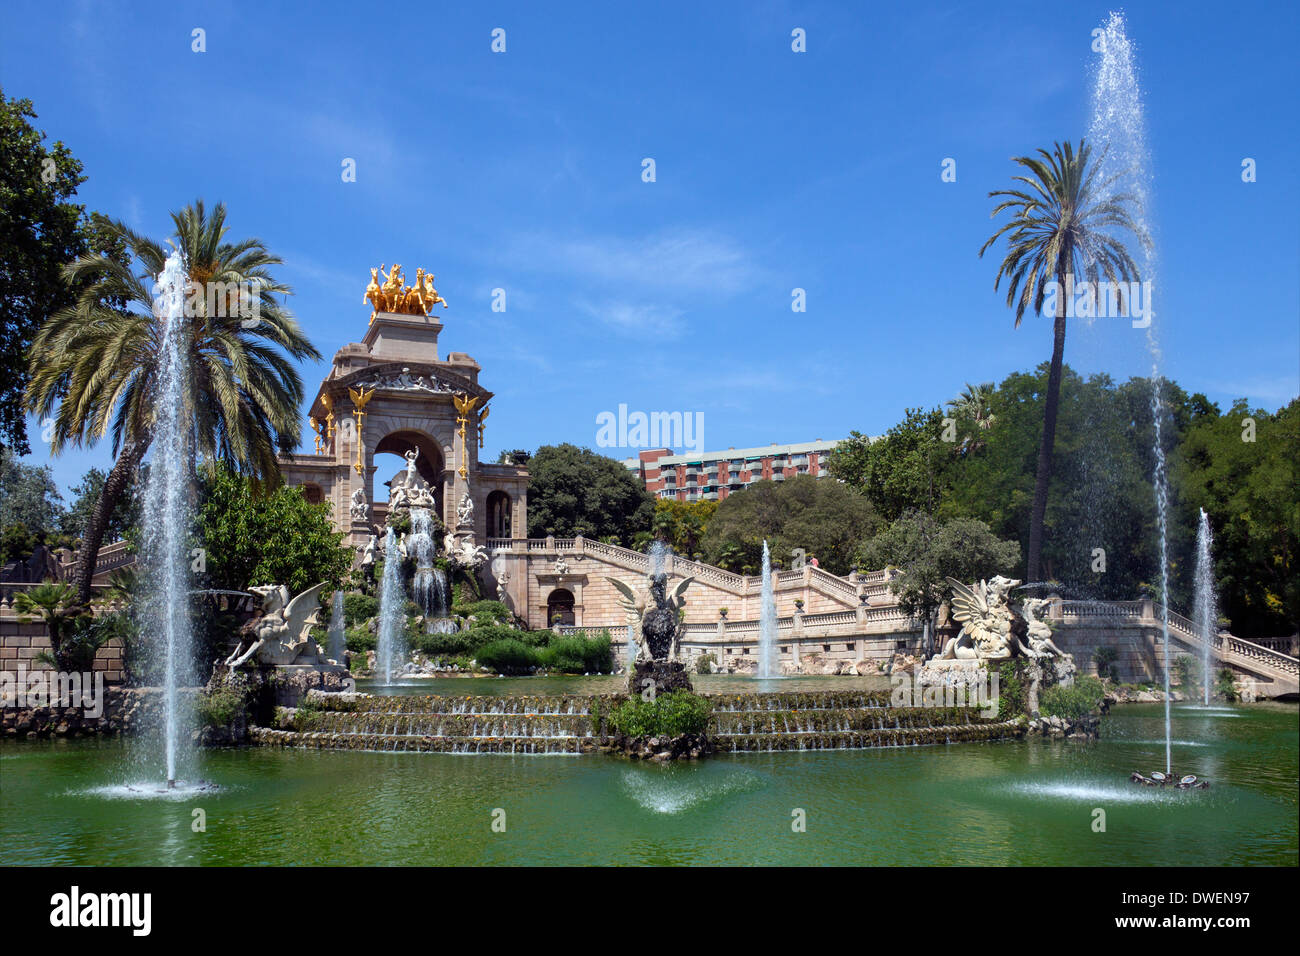 Fontaines ornementales dans le Parc de la Ciutadella - quartier de la vieille ville de Barcelone - Catalogne Région de l'Espagne. Banque D'Images